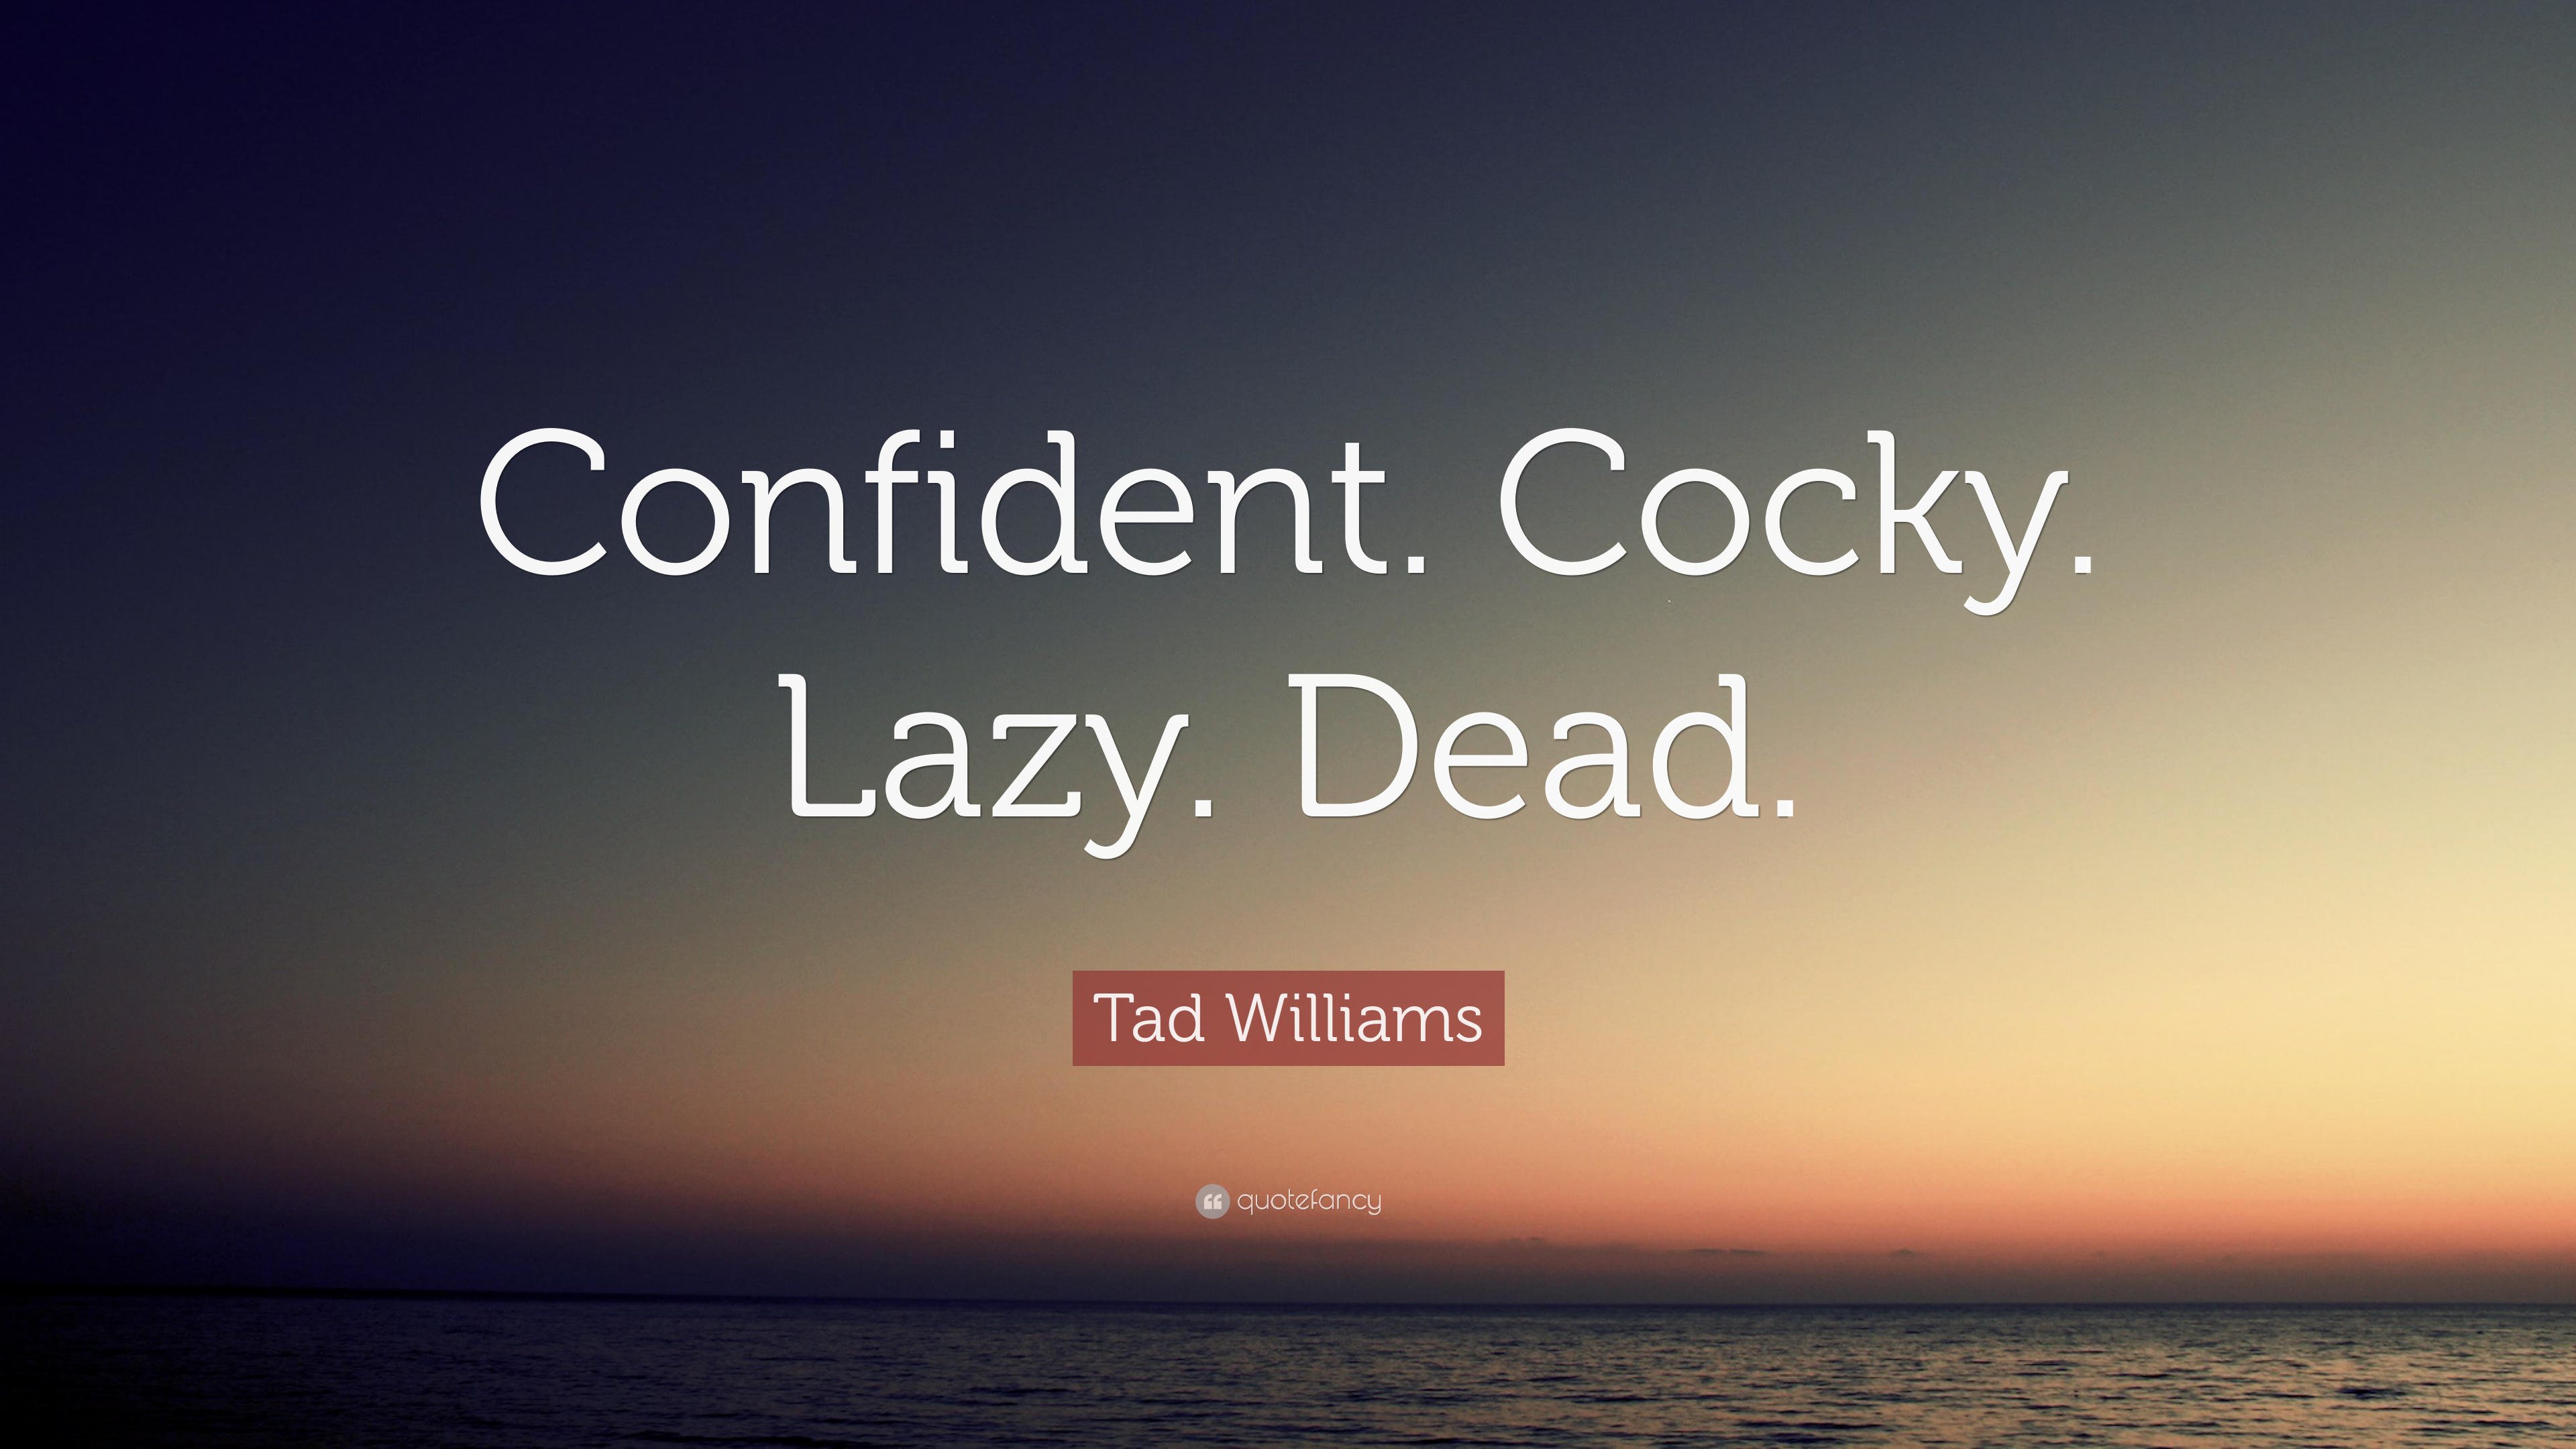 Tad Williams Quote: “Confident. Cocky. Lazy. Dead.” 12 wallpaper